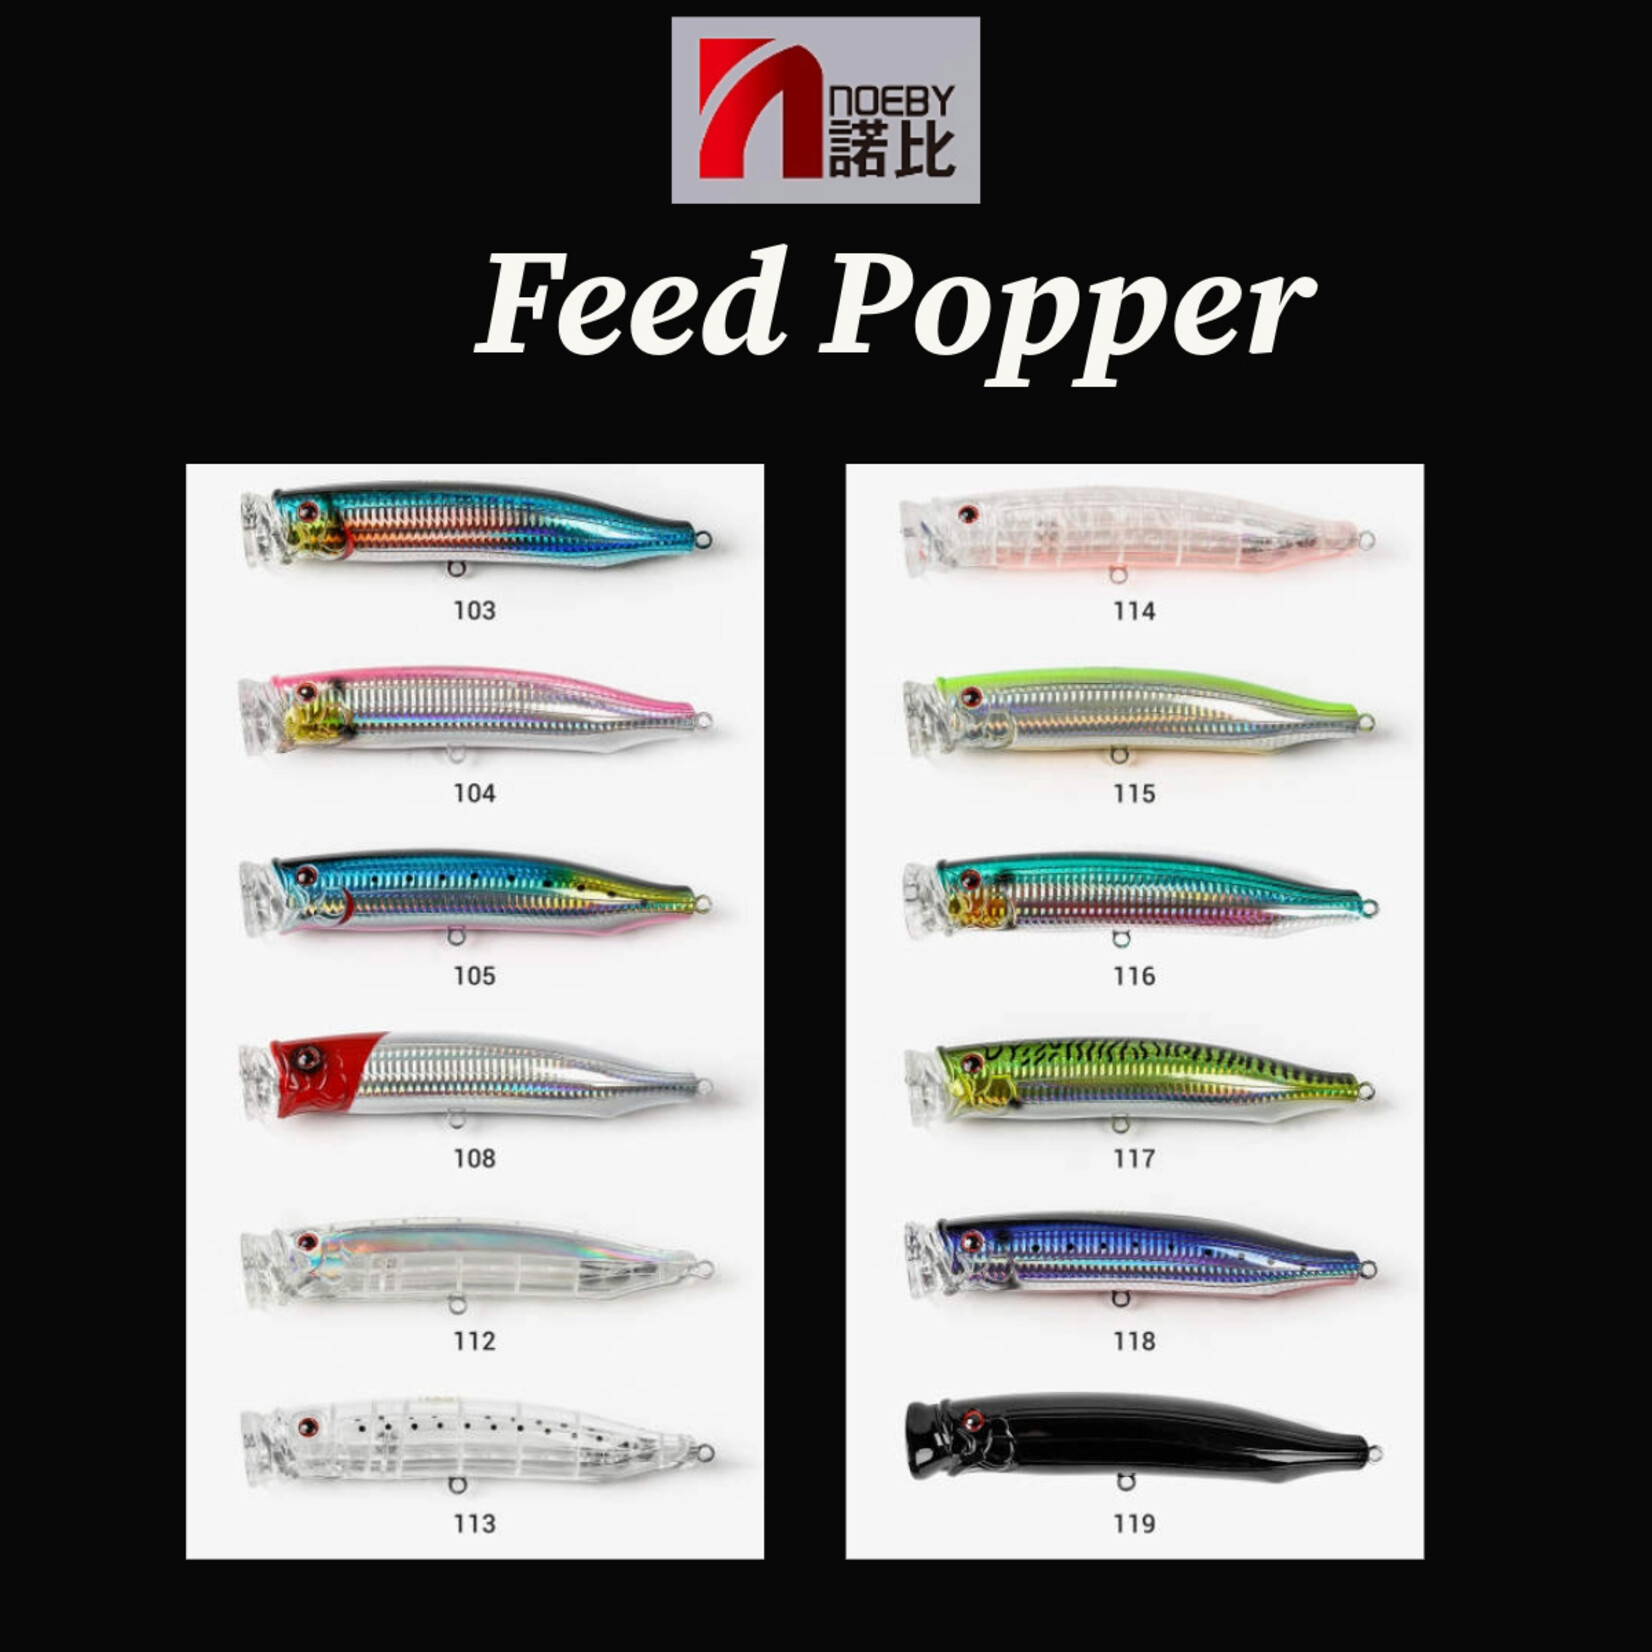 Noeby Feed Popper